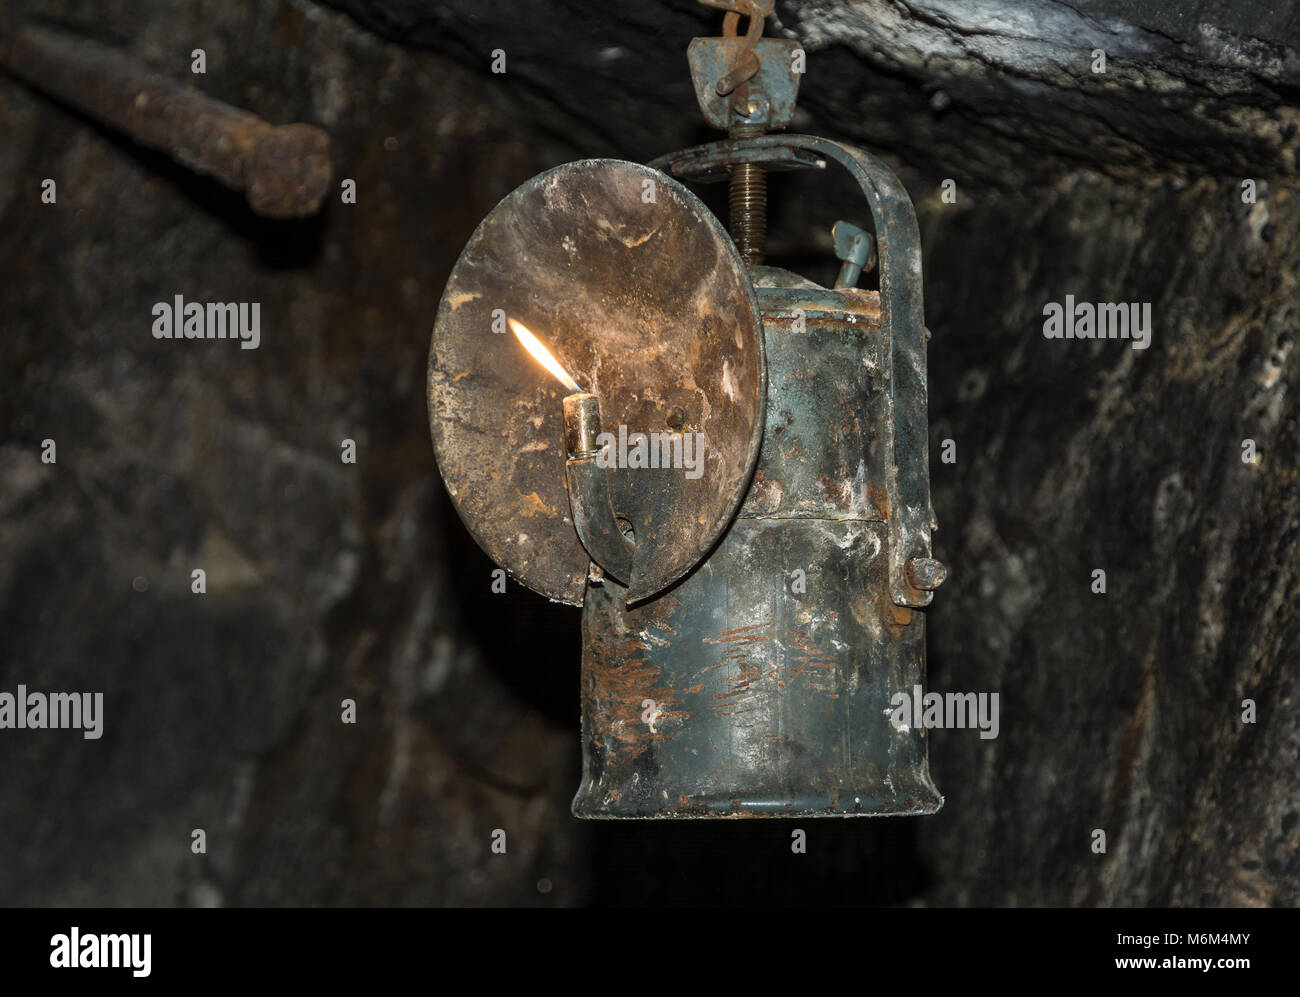 Les lampes à carbure, ou des lampes à gaz acétylène. C'est un type de lampe utilisée dans le passé par des mineurs. Il a été inventé en 1900. Banque D'Images